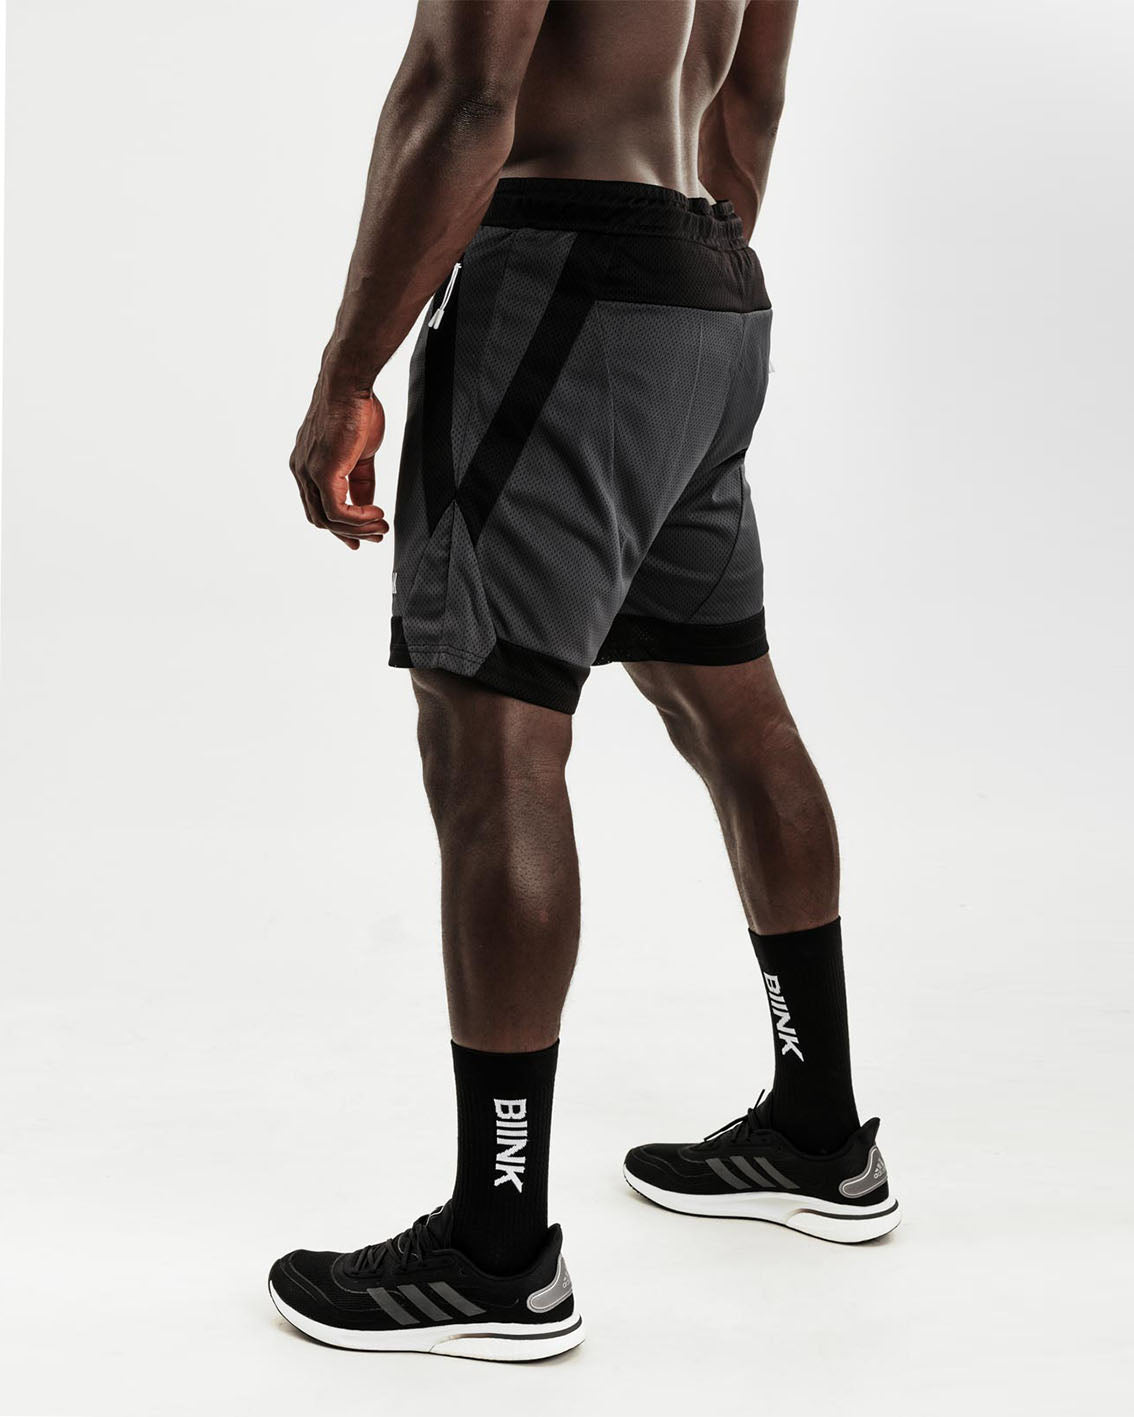 Mesh Panel 2-in-1 Basketball Shorts - Black / Gunmetal